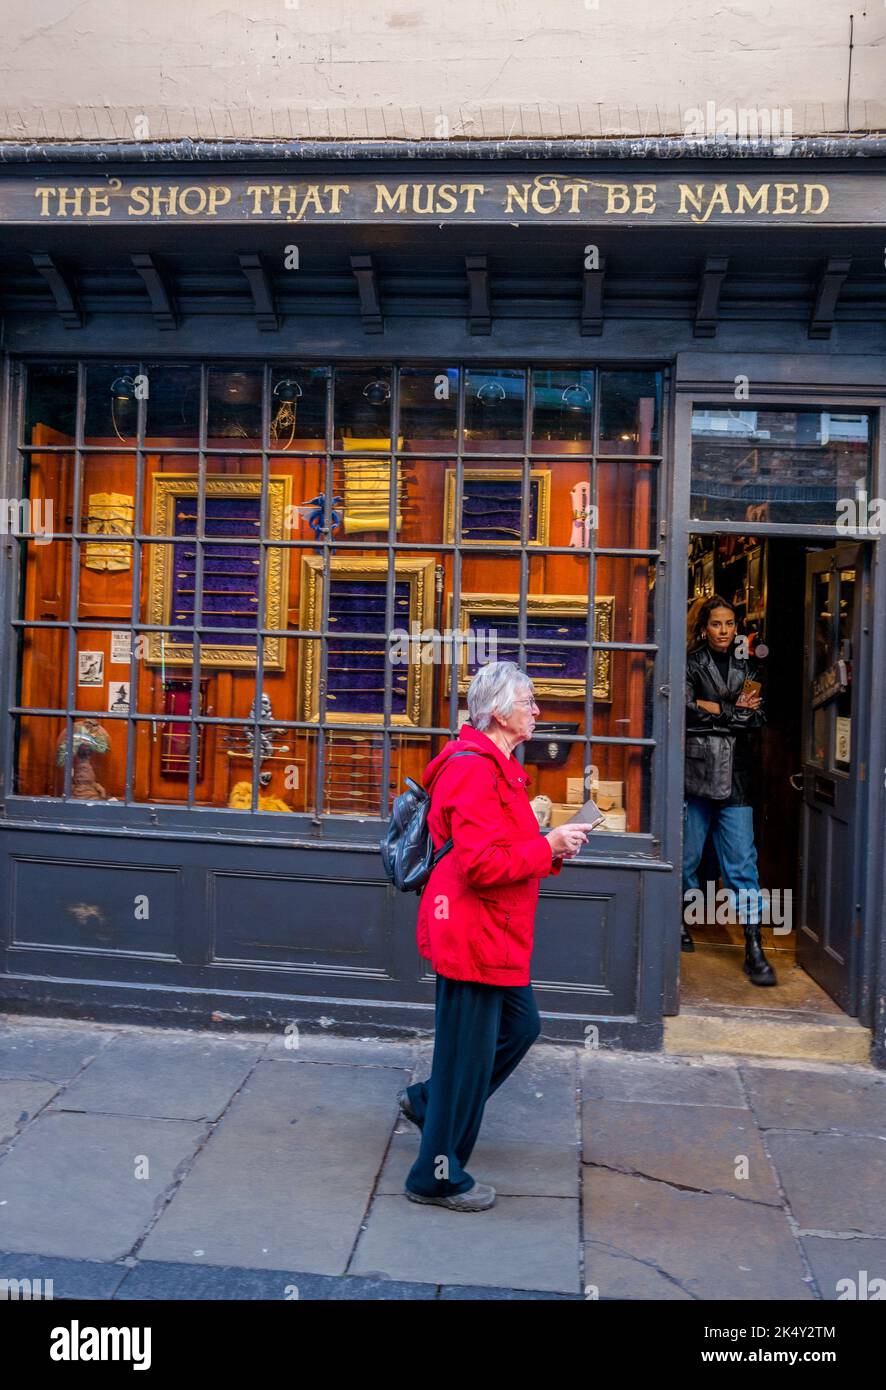 The Shop That Must Not Be Nennung, ein unabhängiger Geschenkeladen im Zentrum von York, spezialisiert auf offiziell lizenzierte Harry Potter Waren, Zauberstäbe. Stockfoto